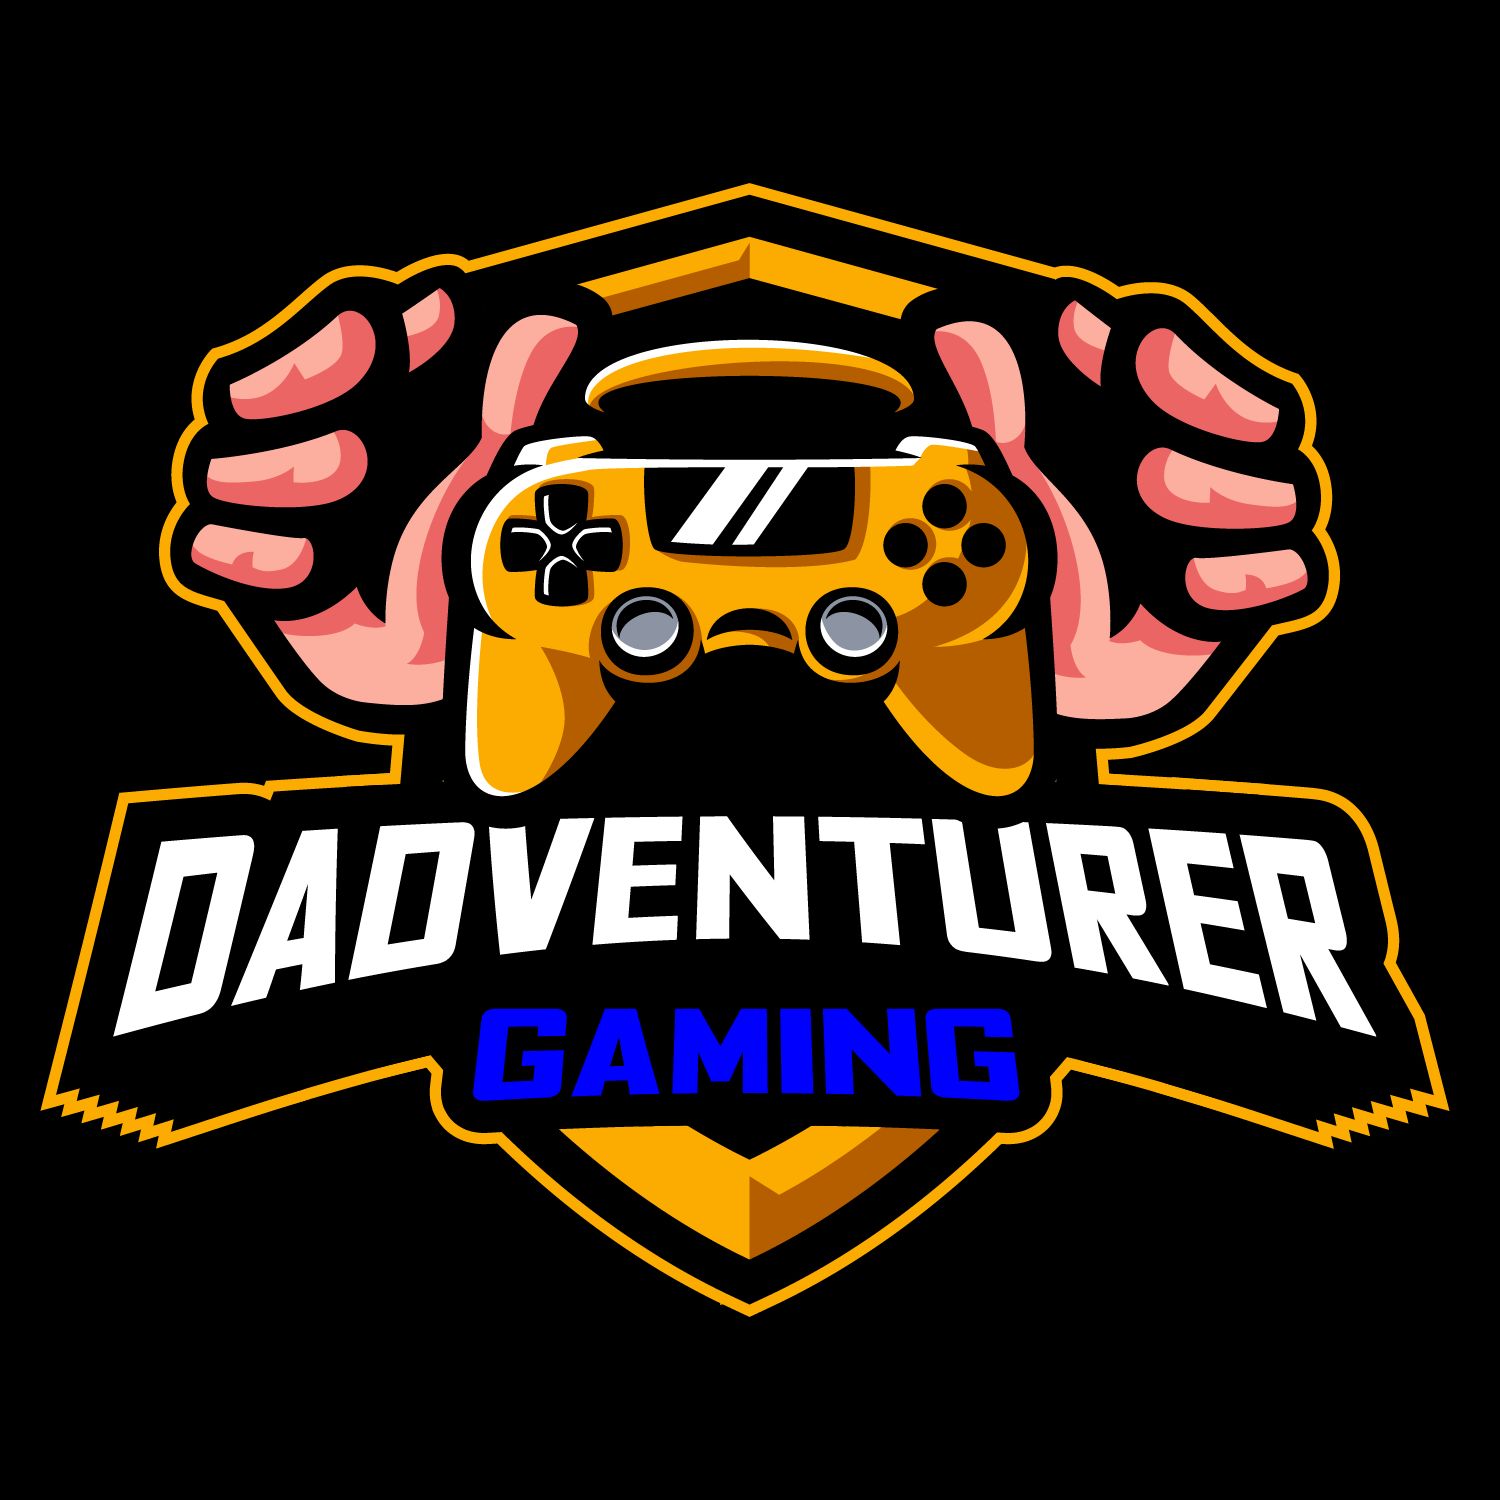 Dadventurer gaming logo.png